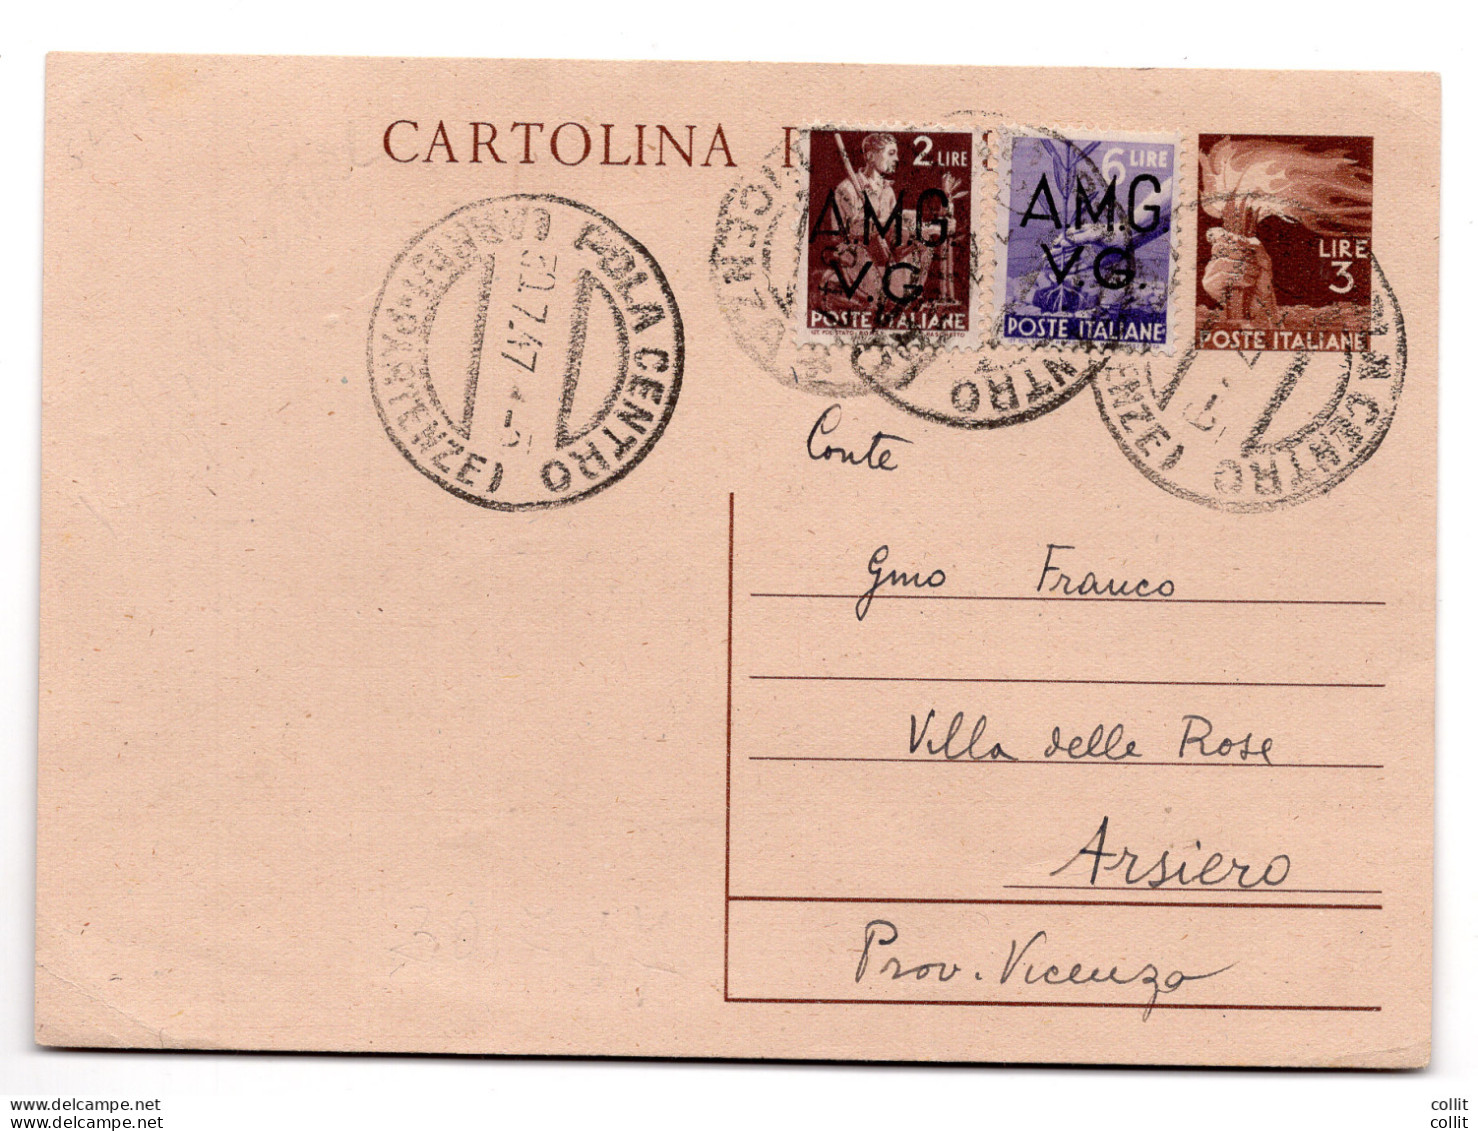 AMG.VG.-Democratica L.6 Cartolina Postale D'Italia Da L.3 Democratica - Mint/hinged